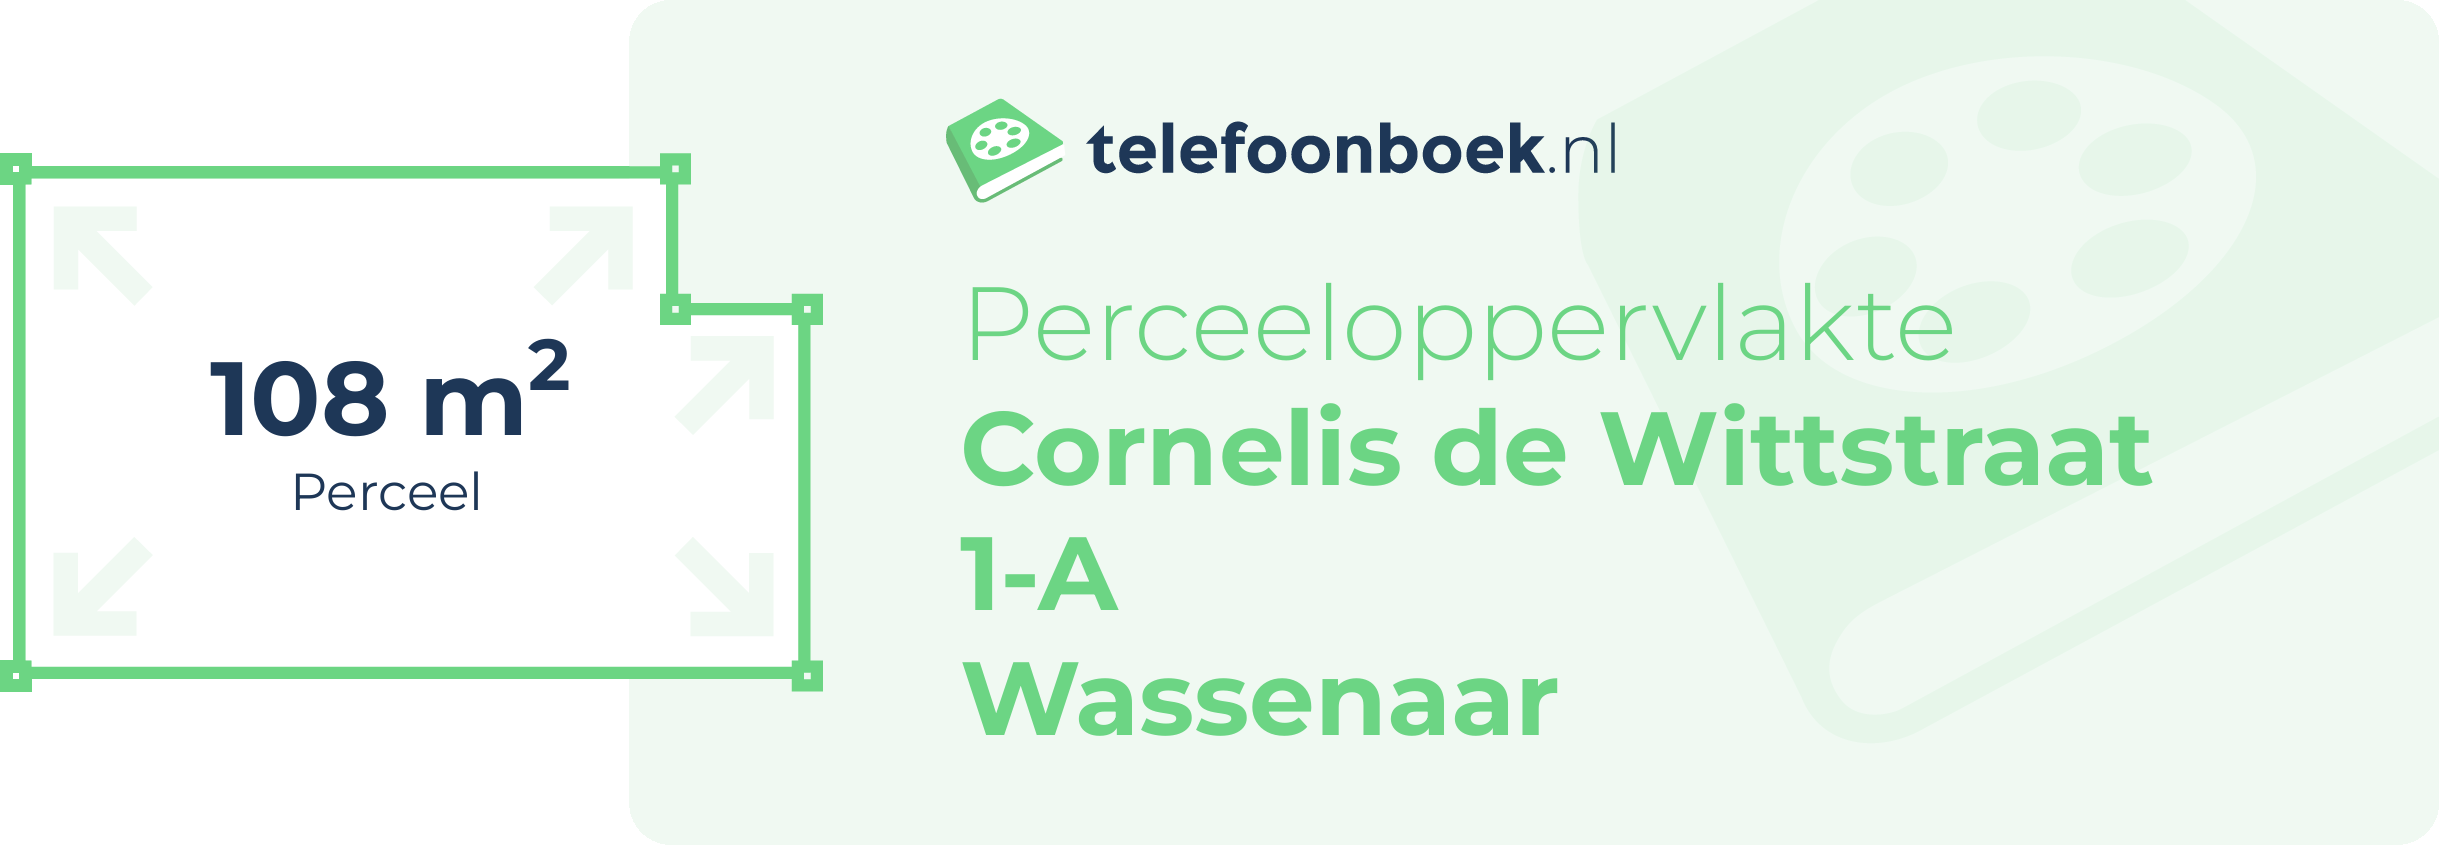 Perceeloppervlakte Cornelis De Wittstraat 1-A Wassenaar